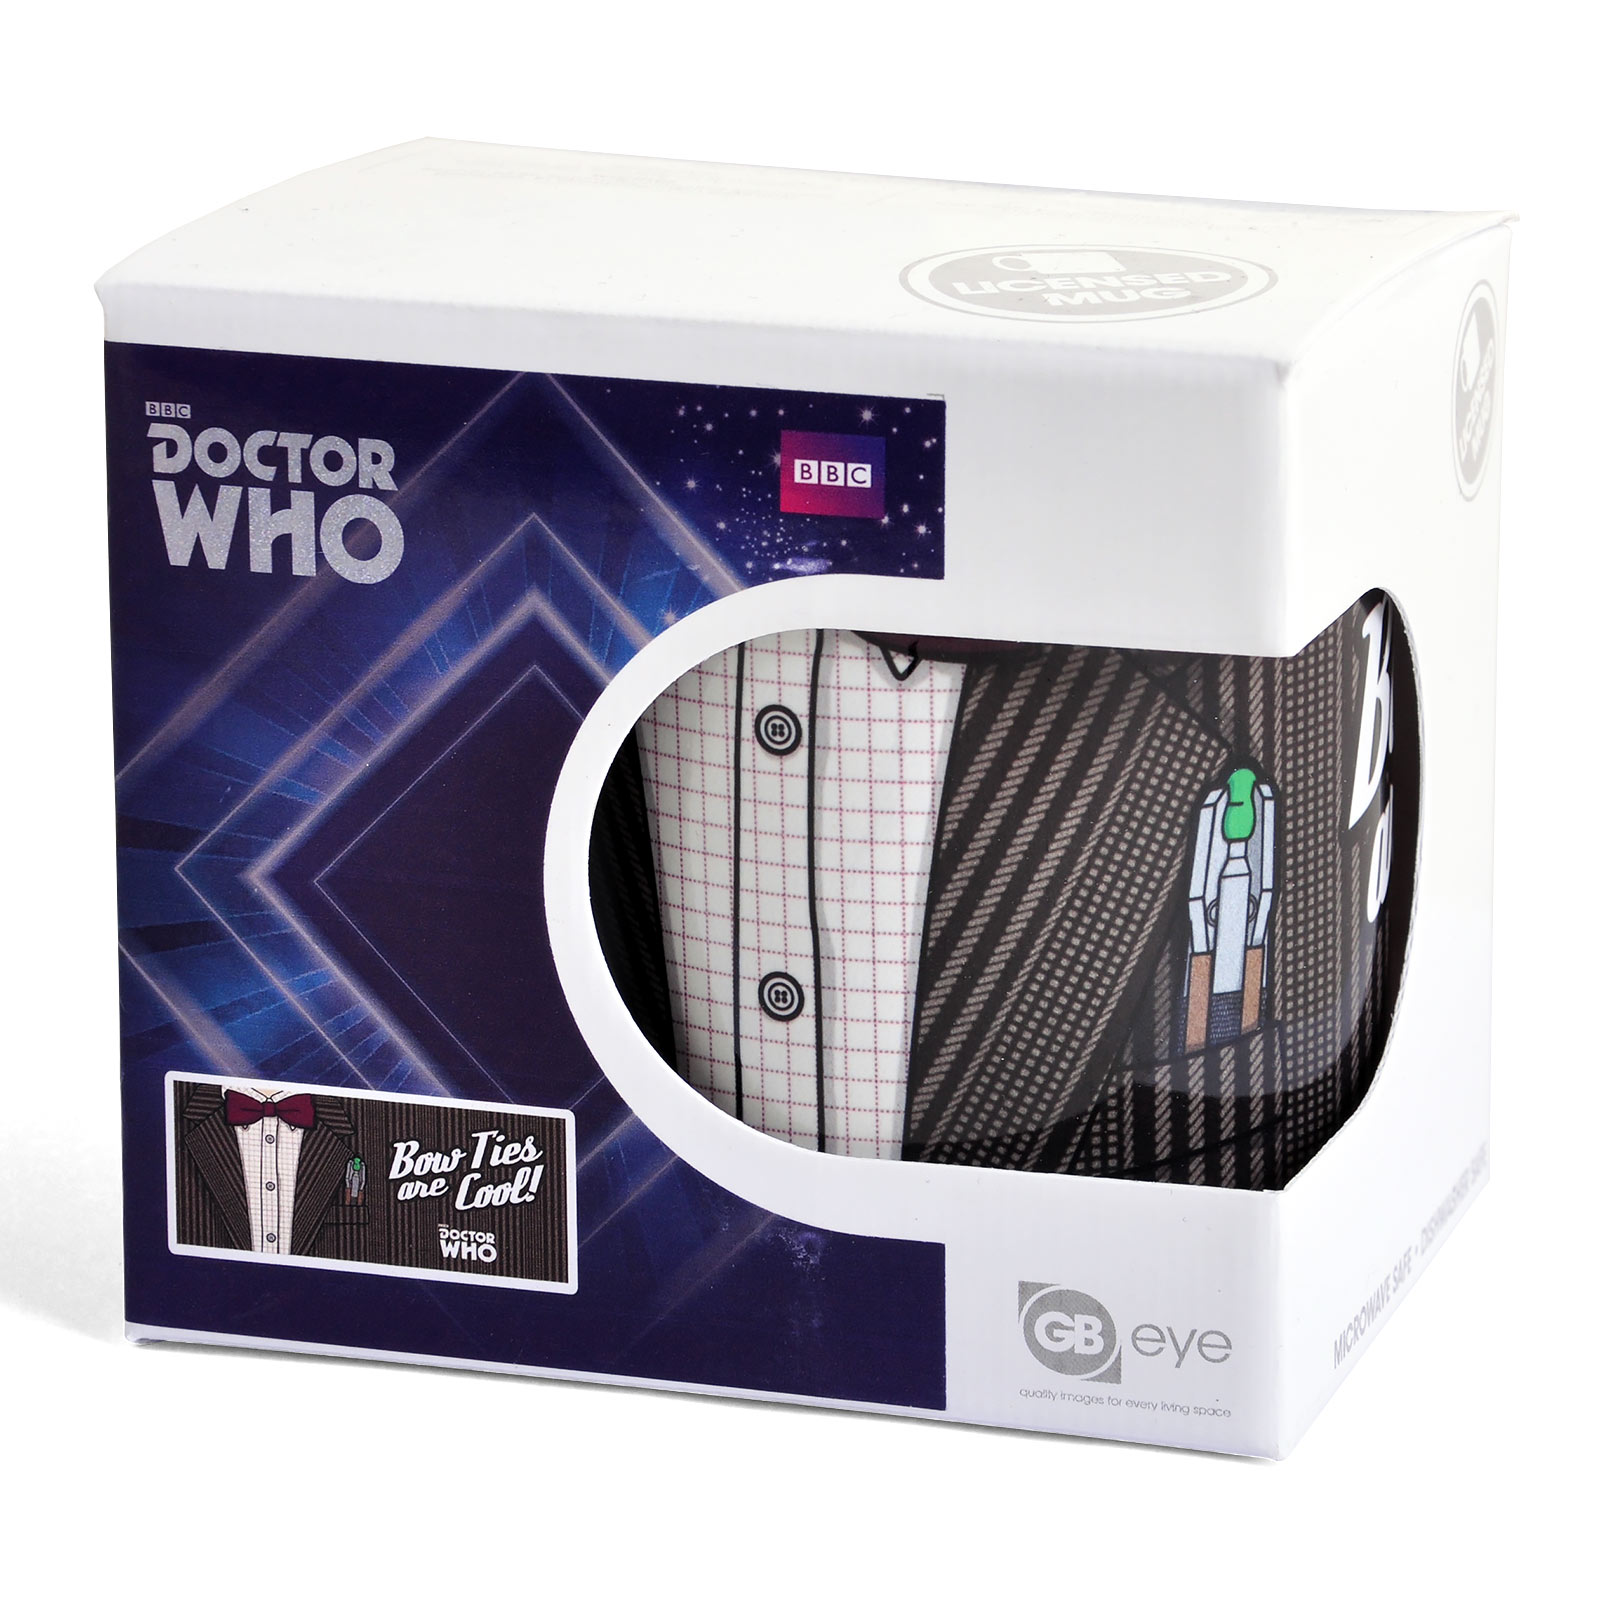 Doctor Who - 11th Doctor Costume Mug